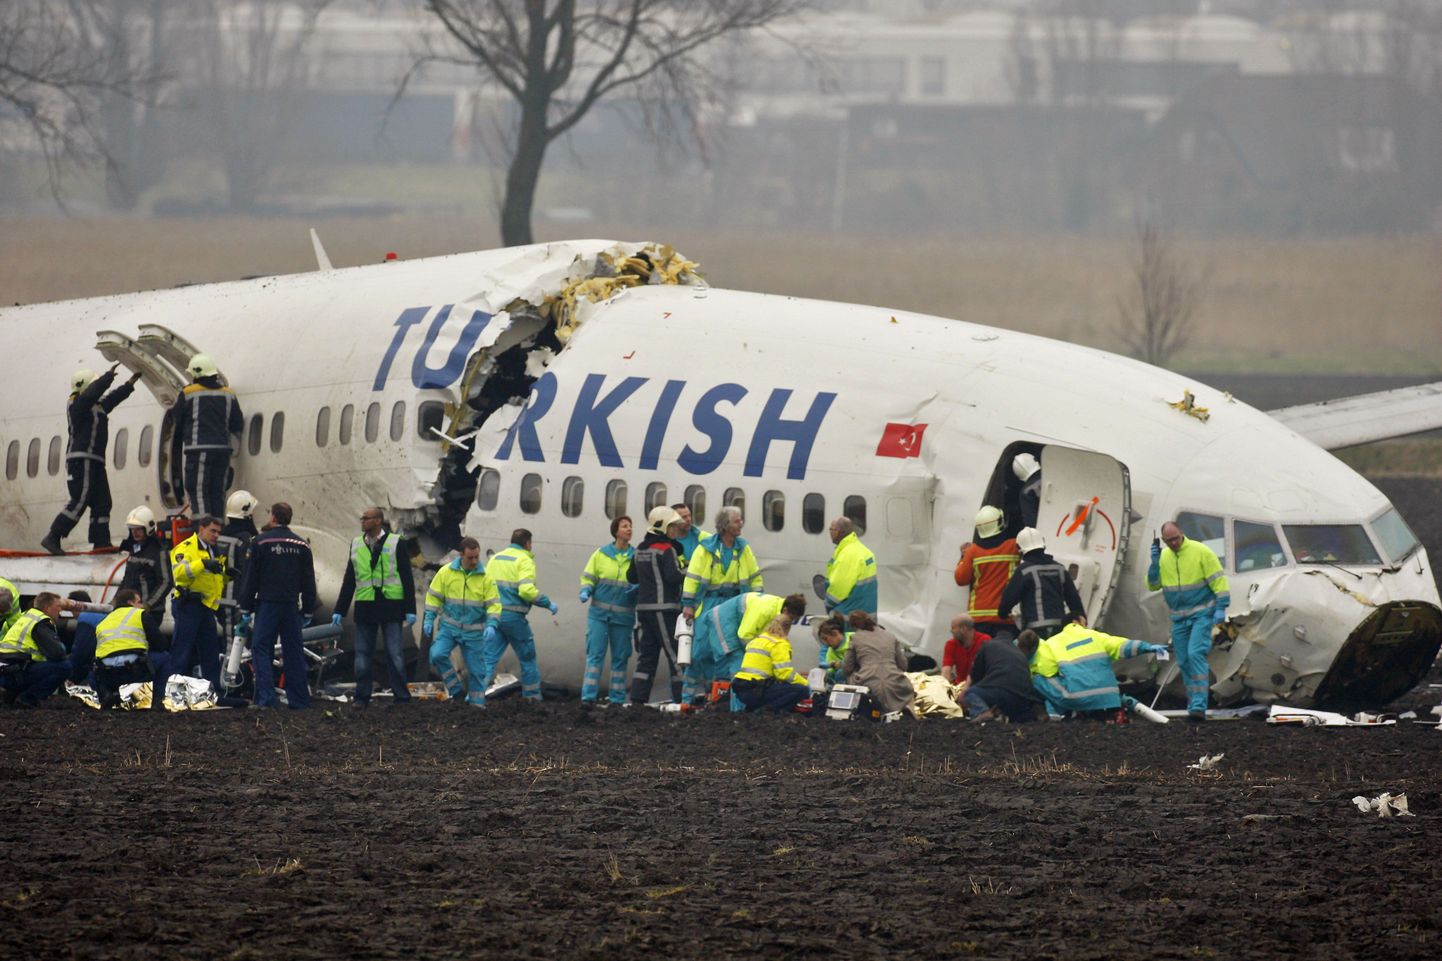 Pildil on hiljutine lennuõnnetus Türgi reisilennukiga.